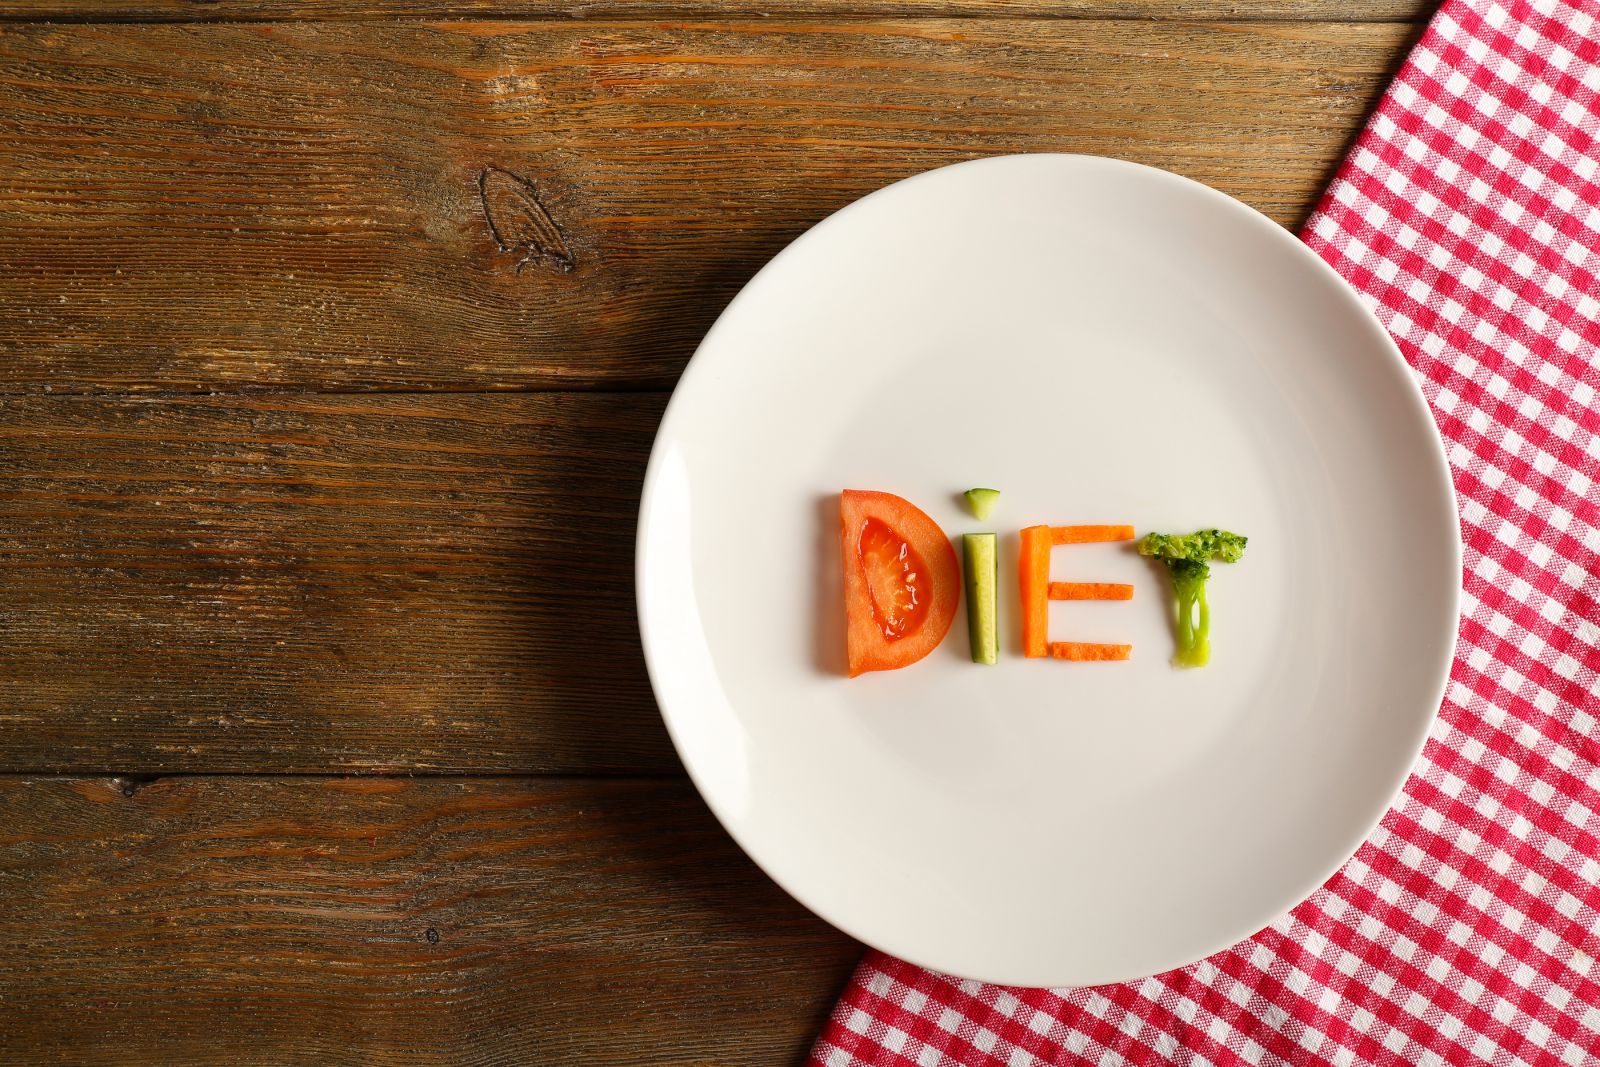 Chế độ ăn kiêng có làm hại cơ thể và gây tăng cân?